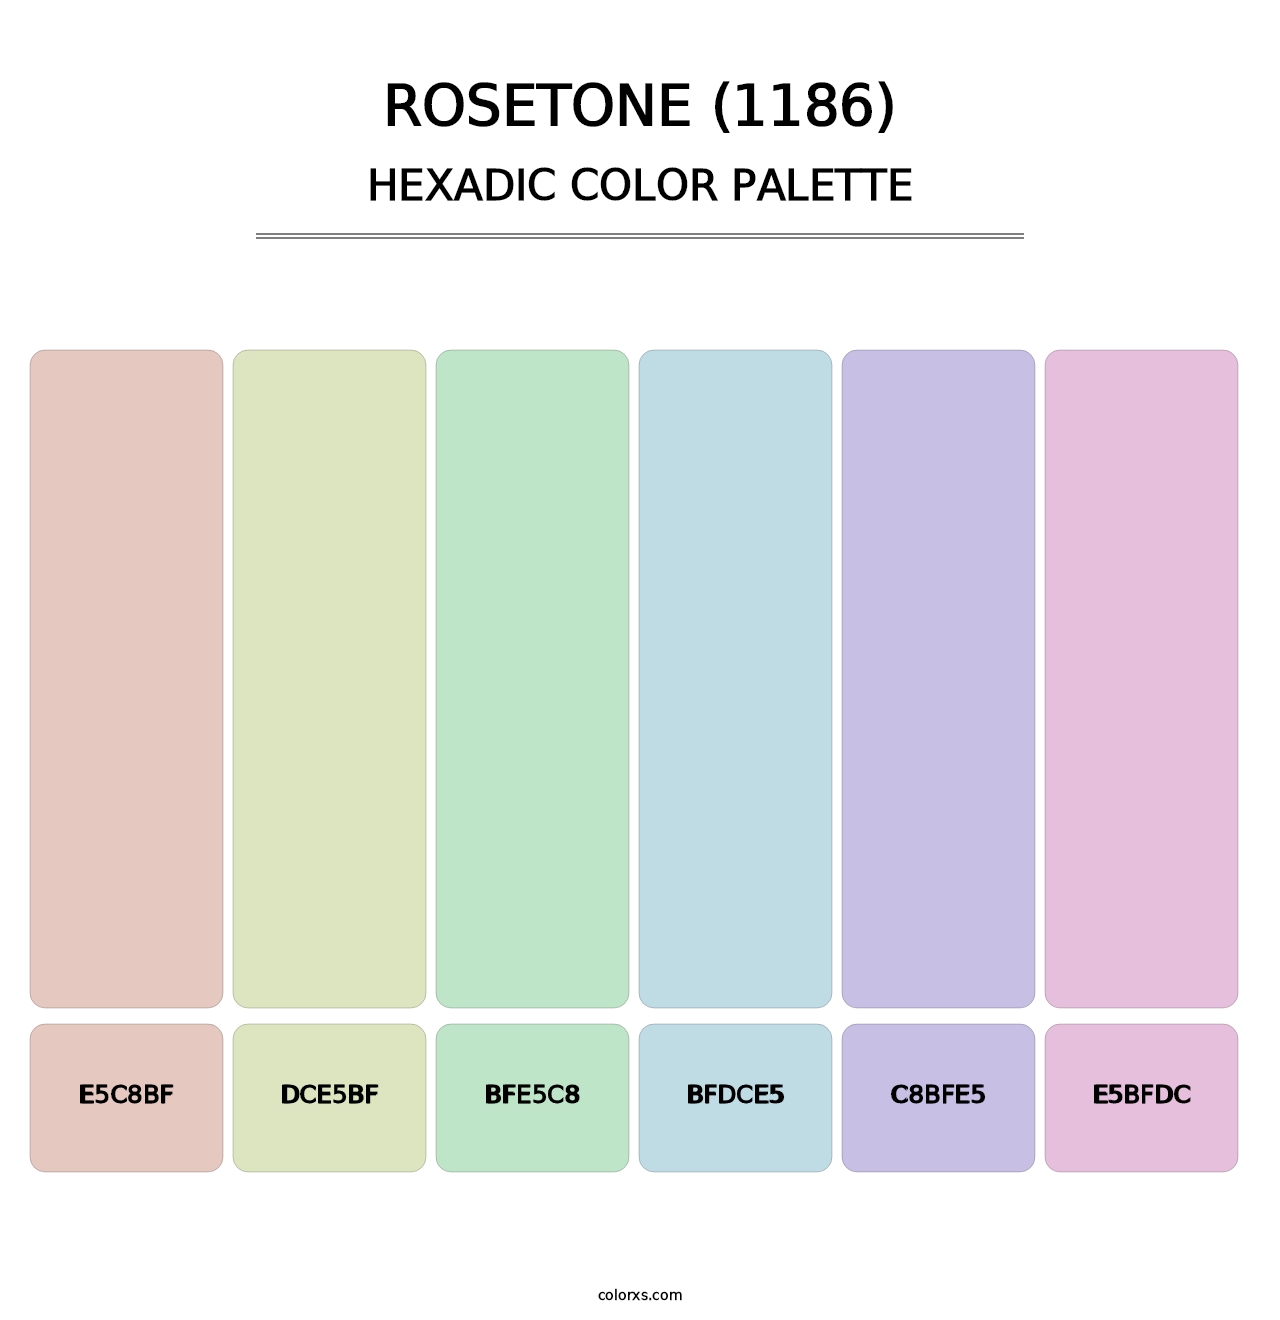 Rosetone (1186) - Hexadic Color Palette